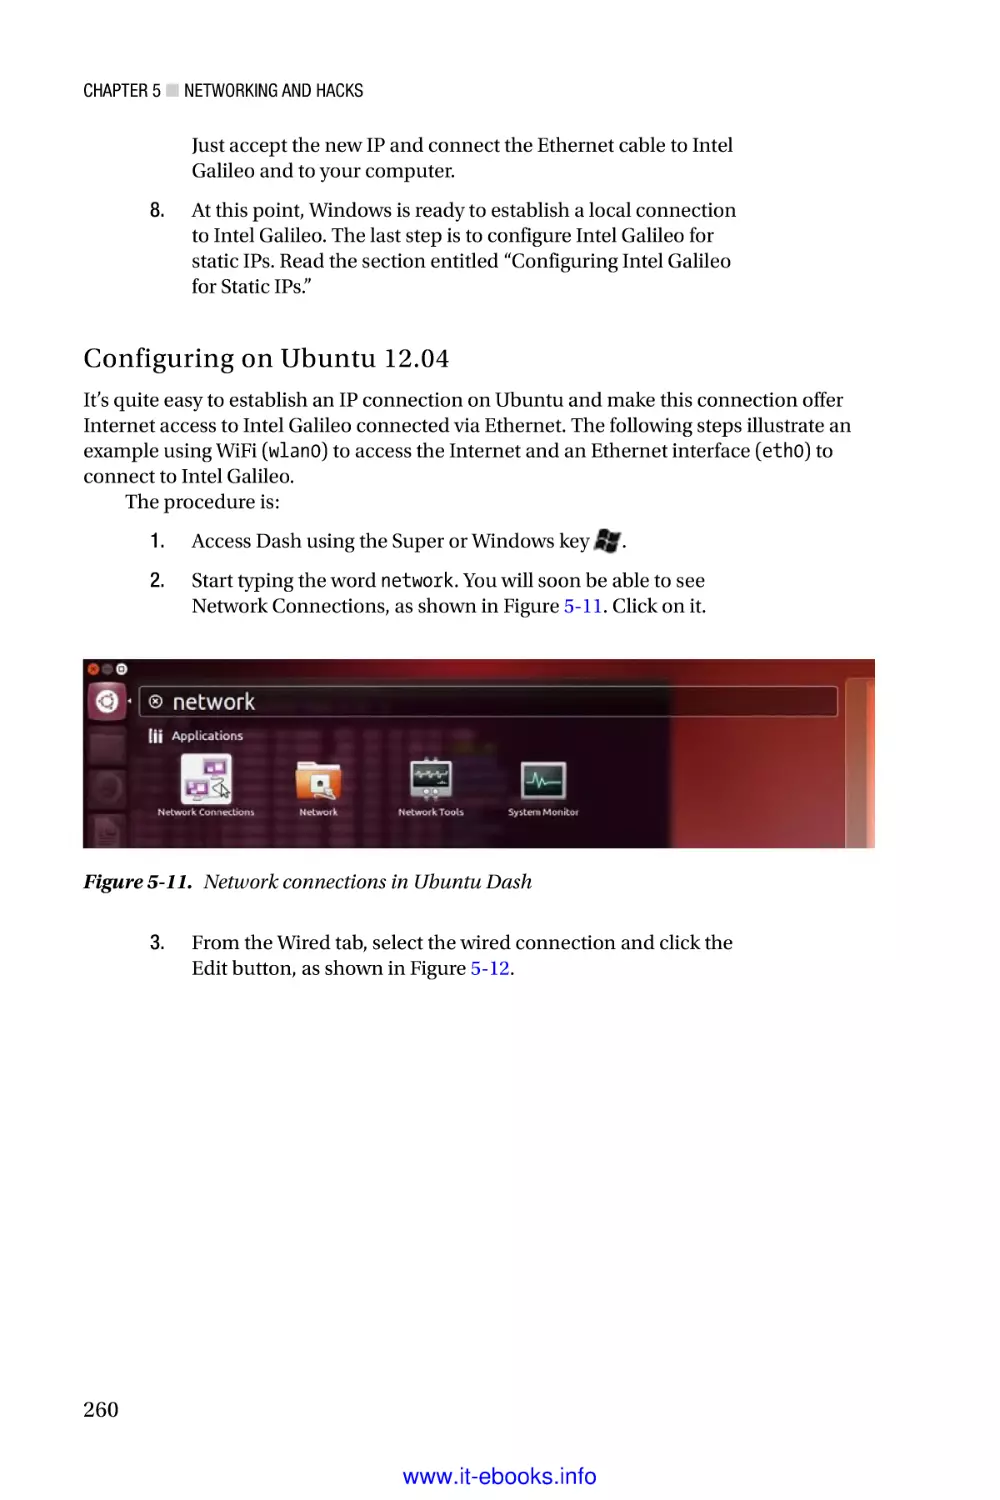 Configuring on Ubuntu 12.04